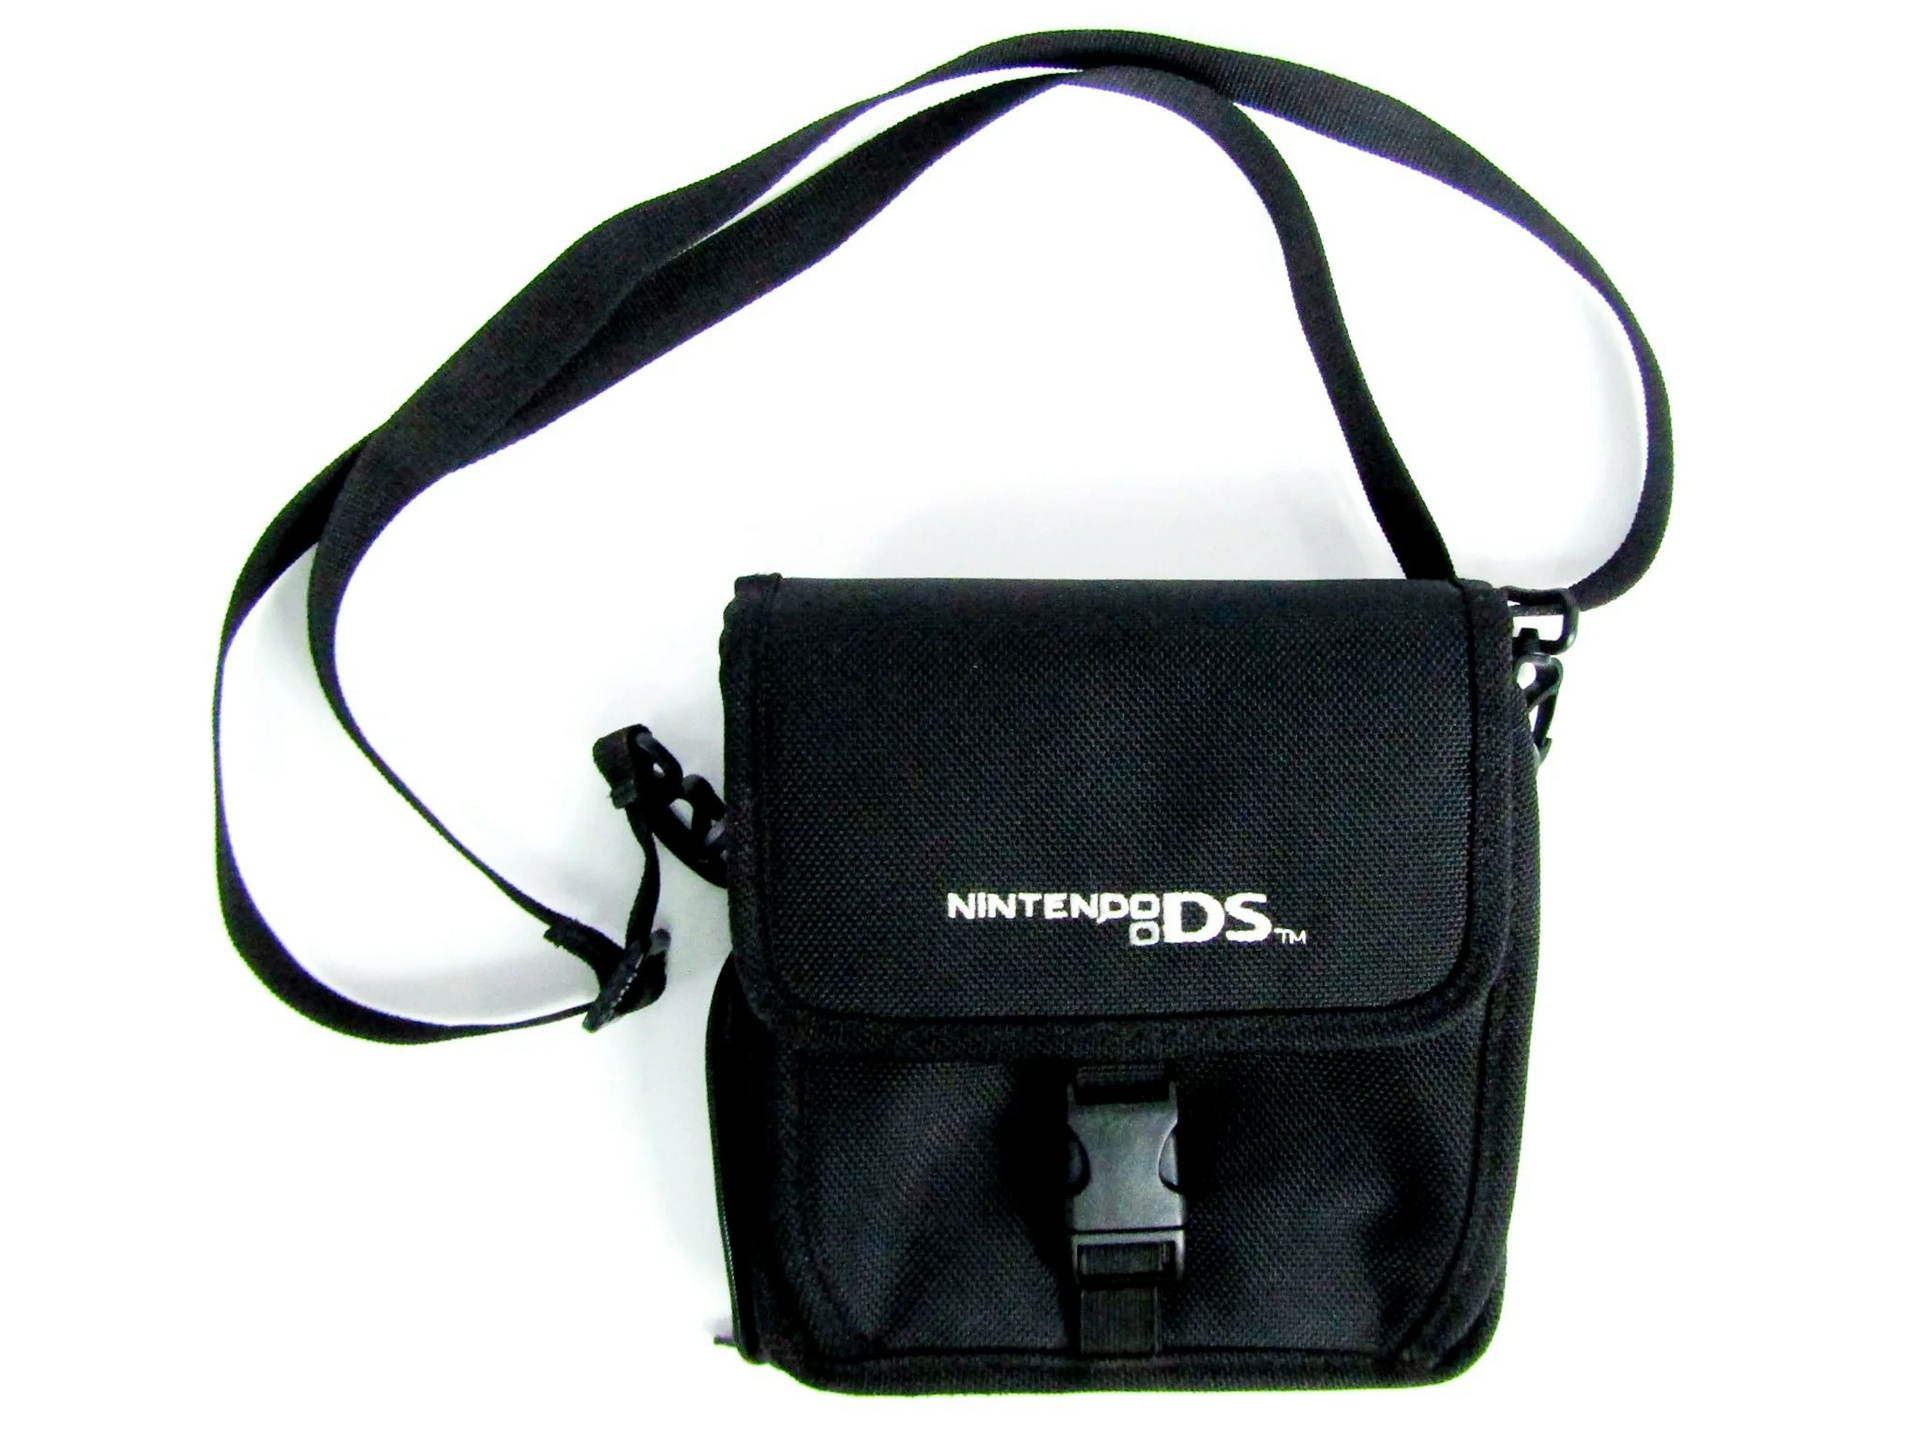 Nintendo DS Bag Black - Nintendo 3DS Hardware